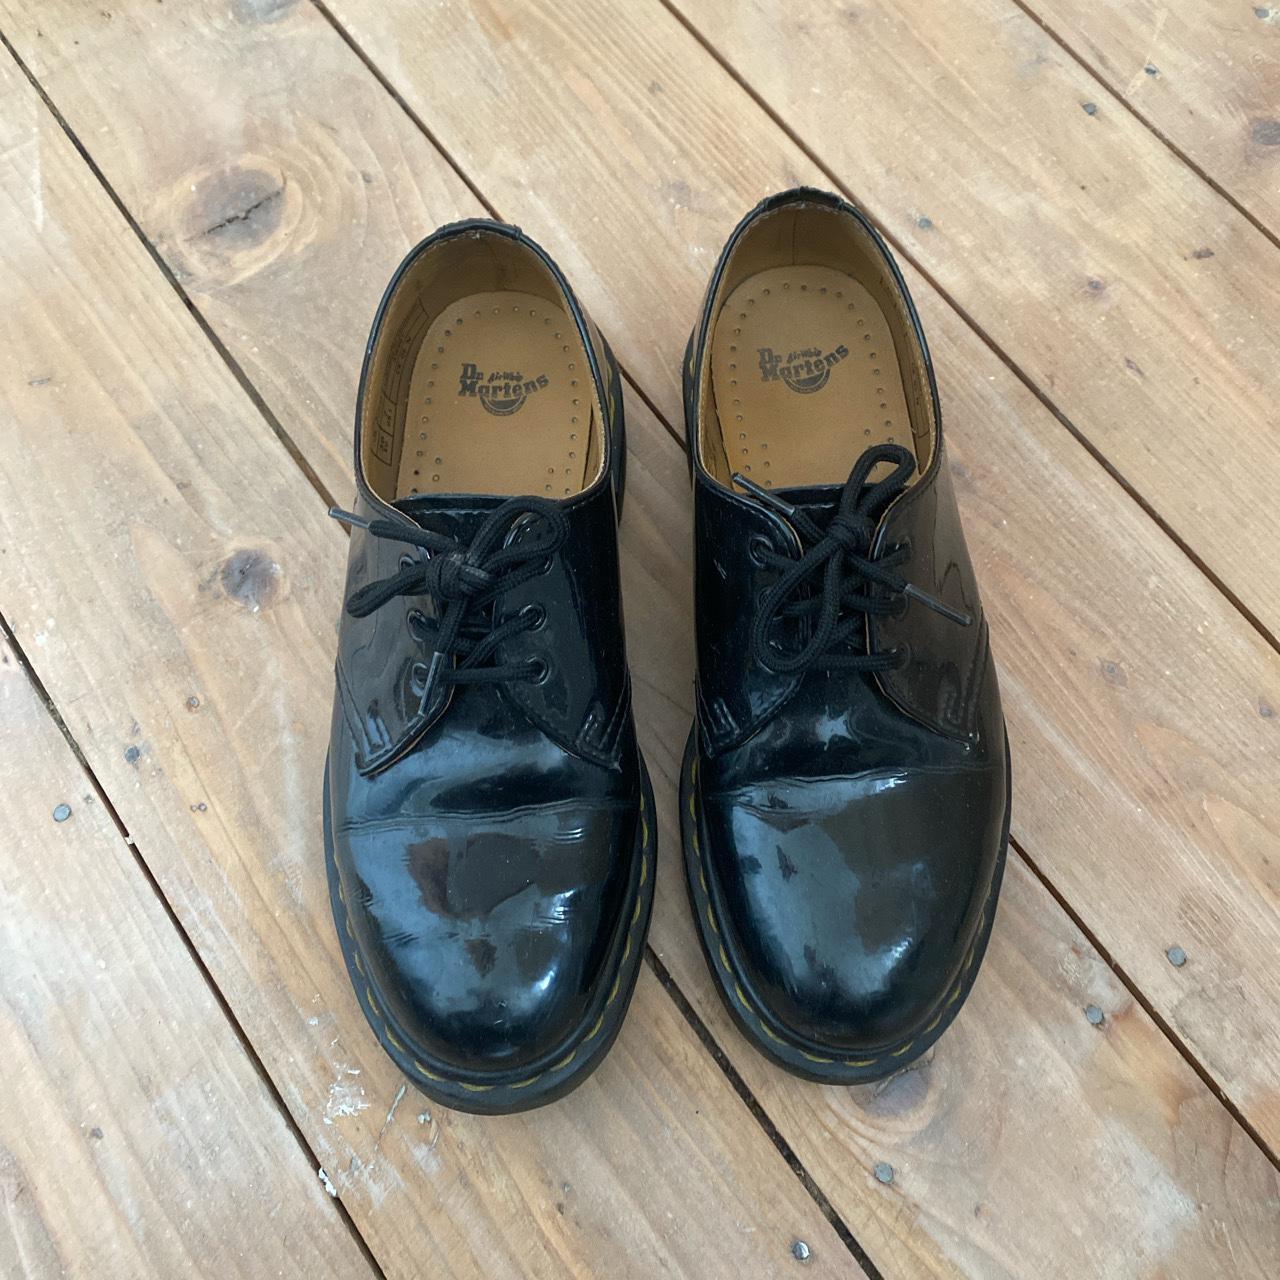 Dr Marten 1461 Black Patent Leather Shoes size 5 /... - Depop